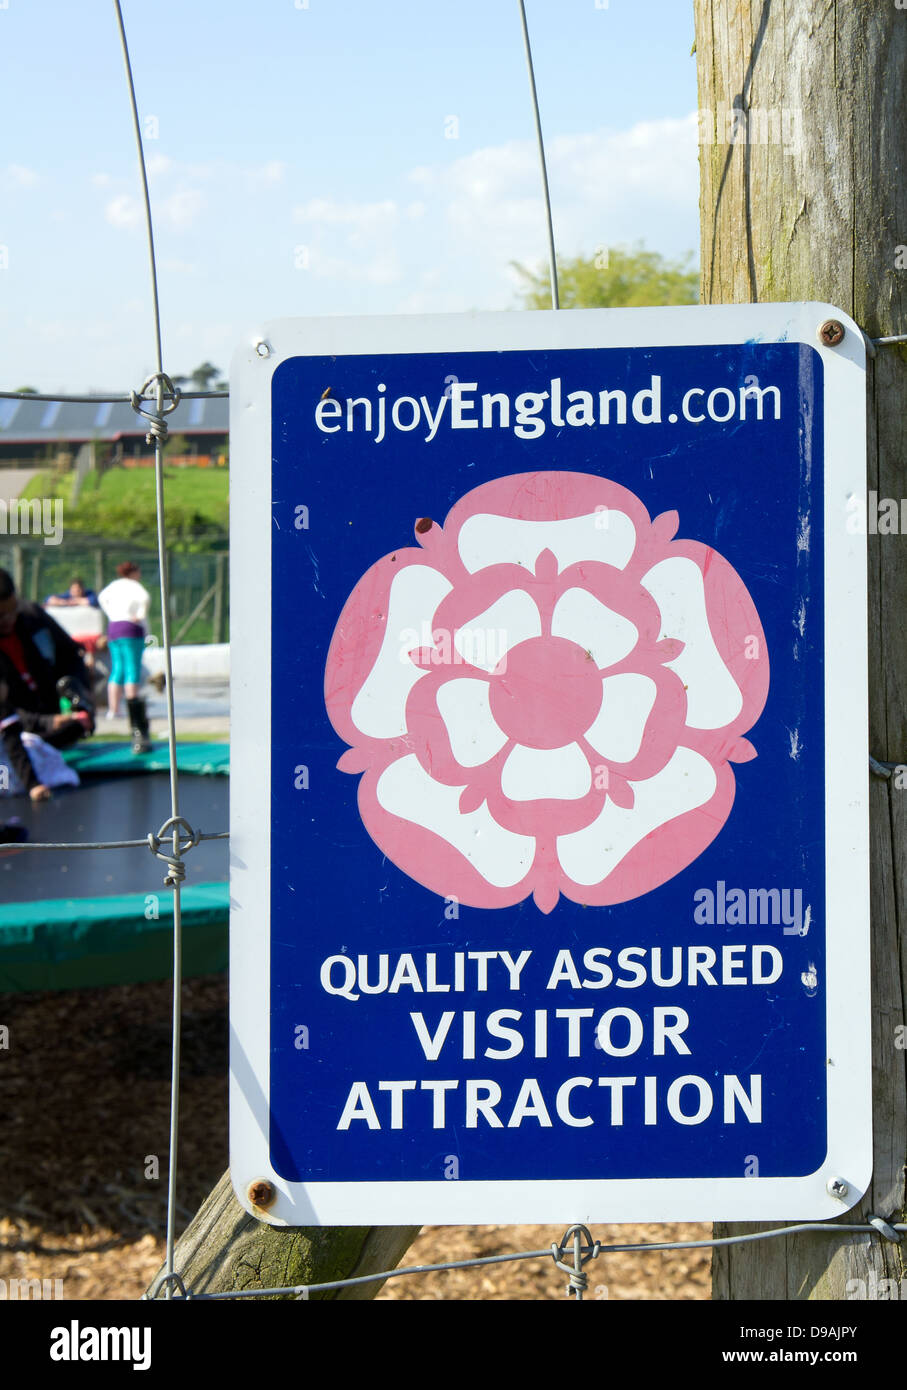 Genießen Sie England Qualitätszeichen gesicherte Besucher Attraktion auf Noahs Arche Zoo Bauernhof, Bristol, UK Stockfoto